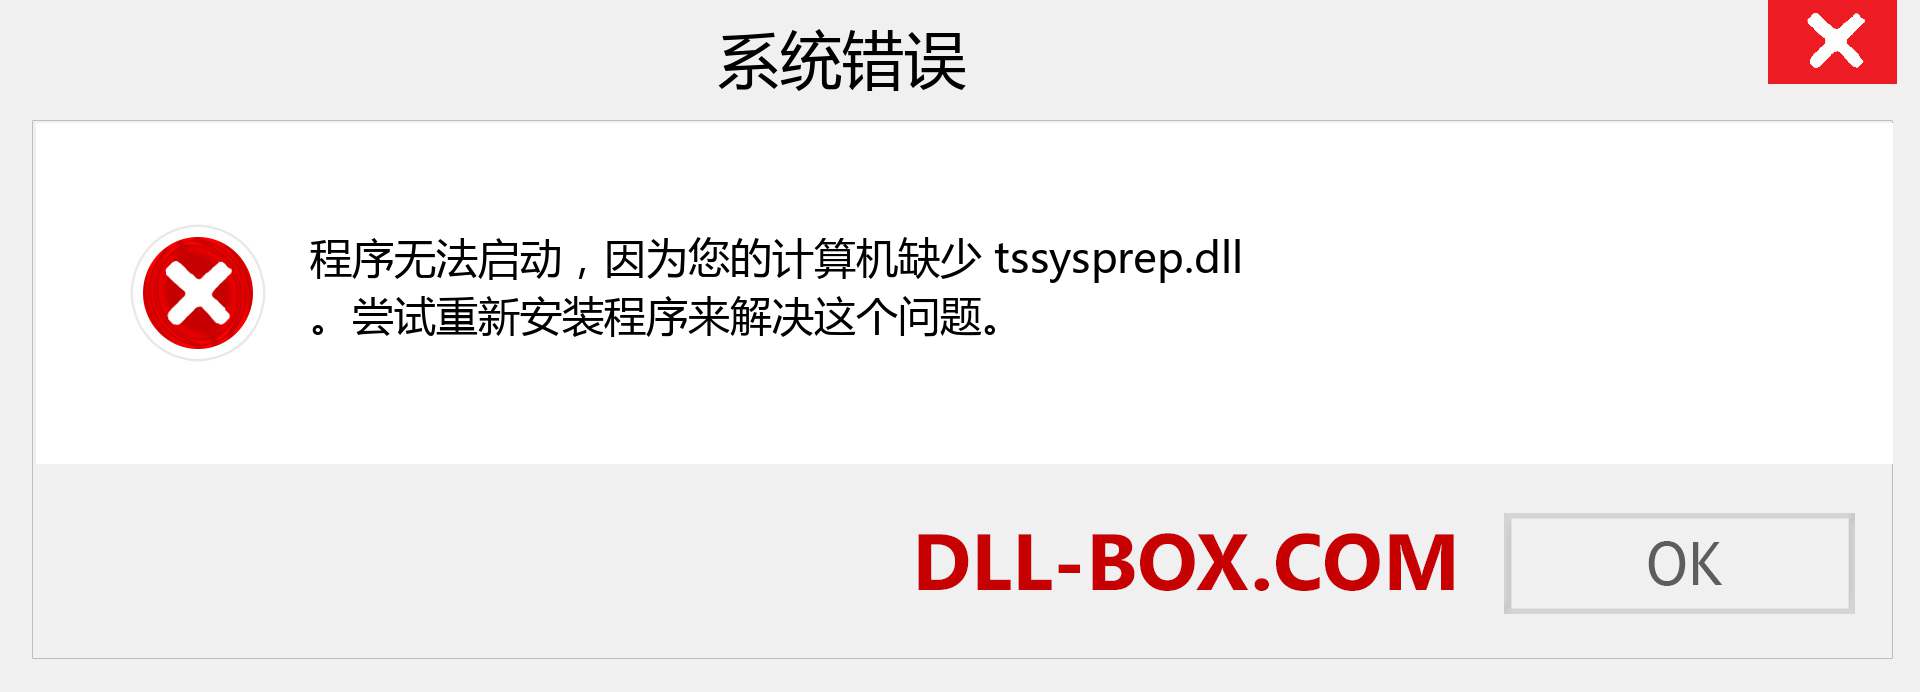 tssysprep.dll 文件丢失？。 适用于 Windows 7、8、10 的下载 - 修复 Windows、照片、图像上的 tssysprep dll 丢失错误